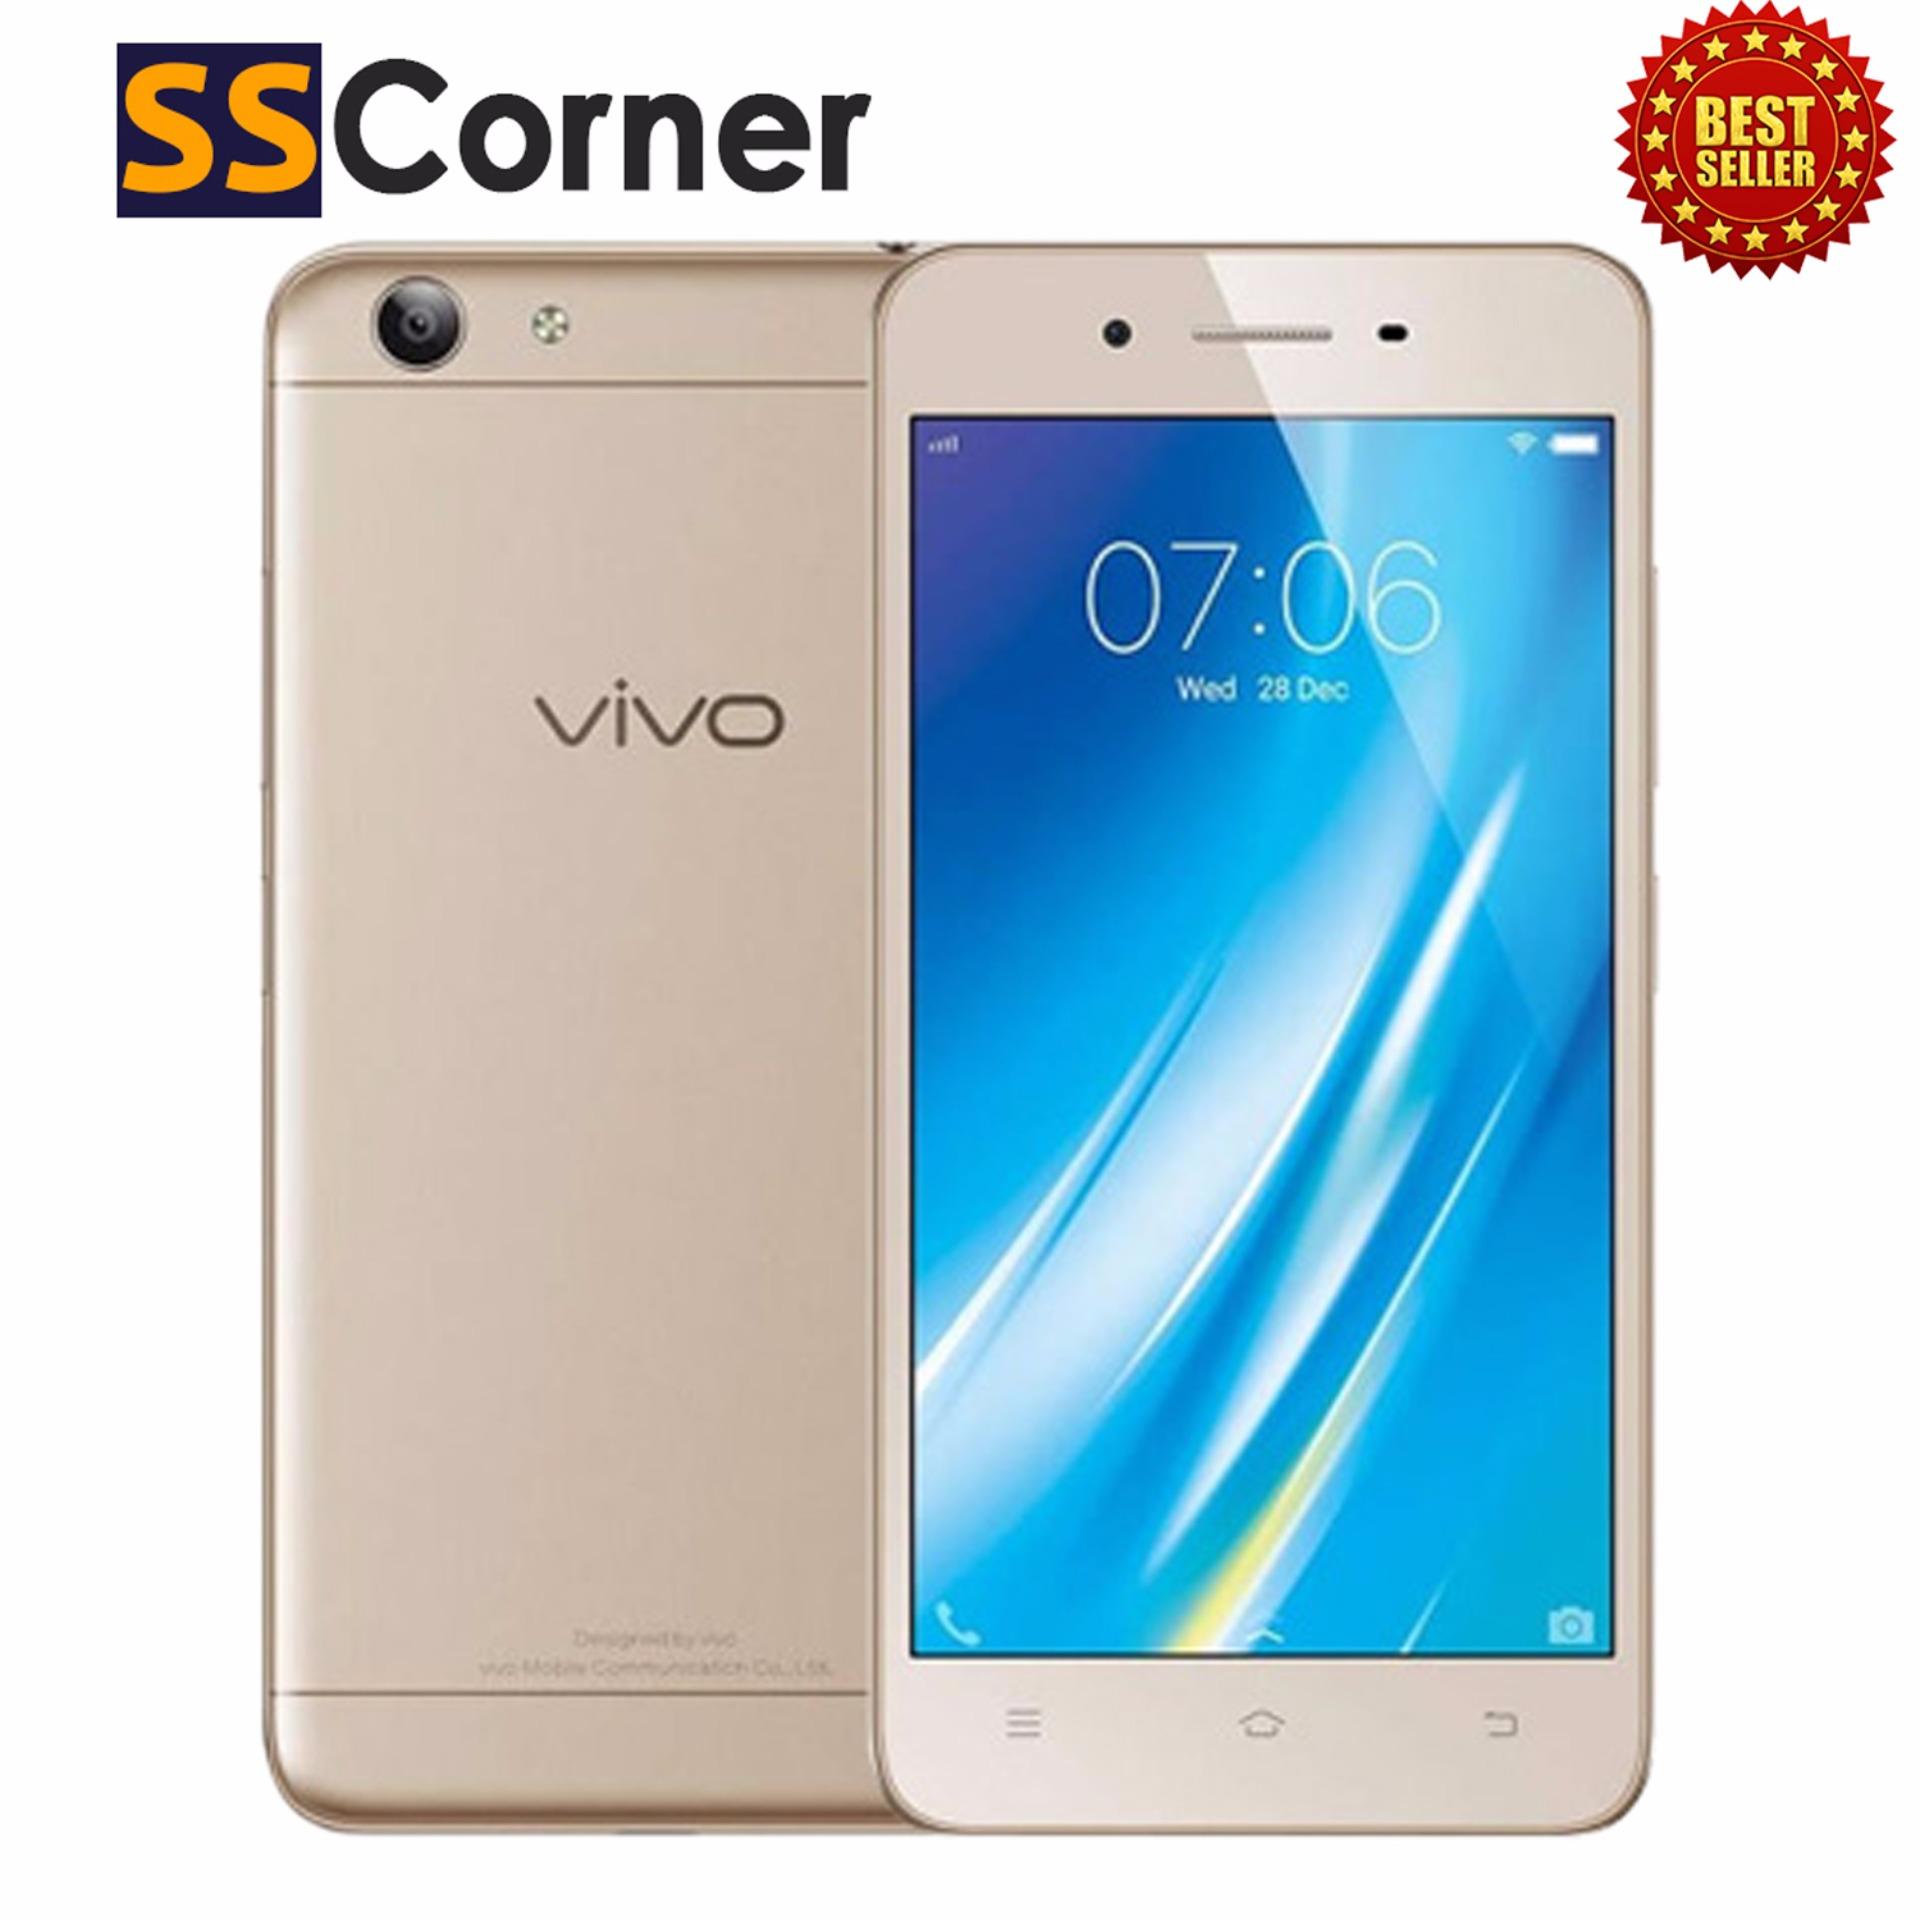 SS Corner VIVO Y53 Smartphone - Gold 